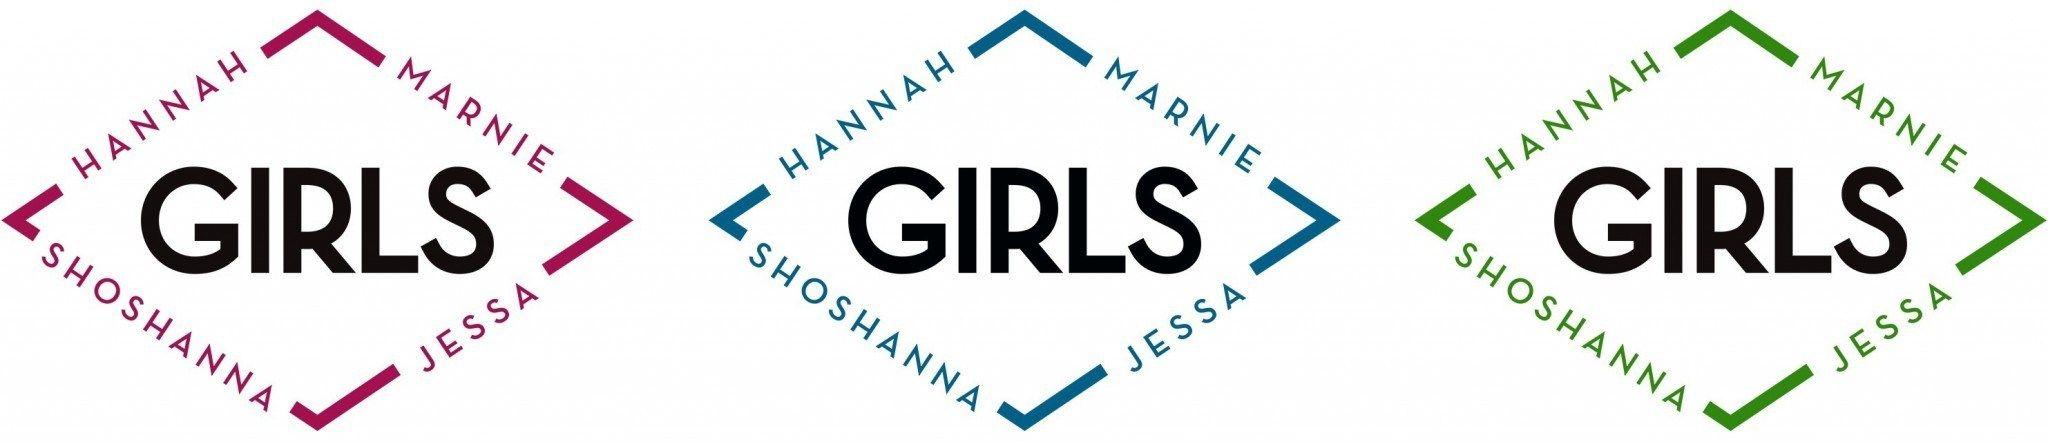 Merchandising Logo - GIRLS Merchandising Logo